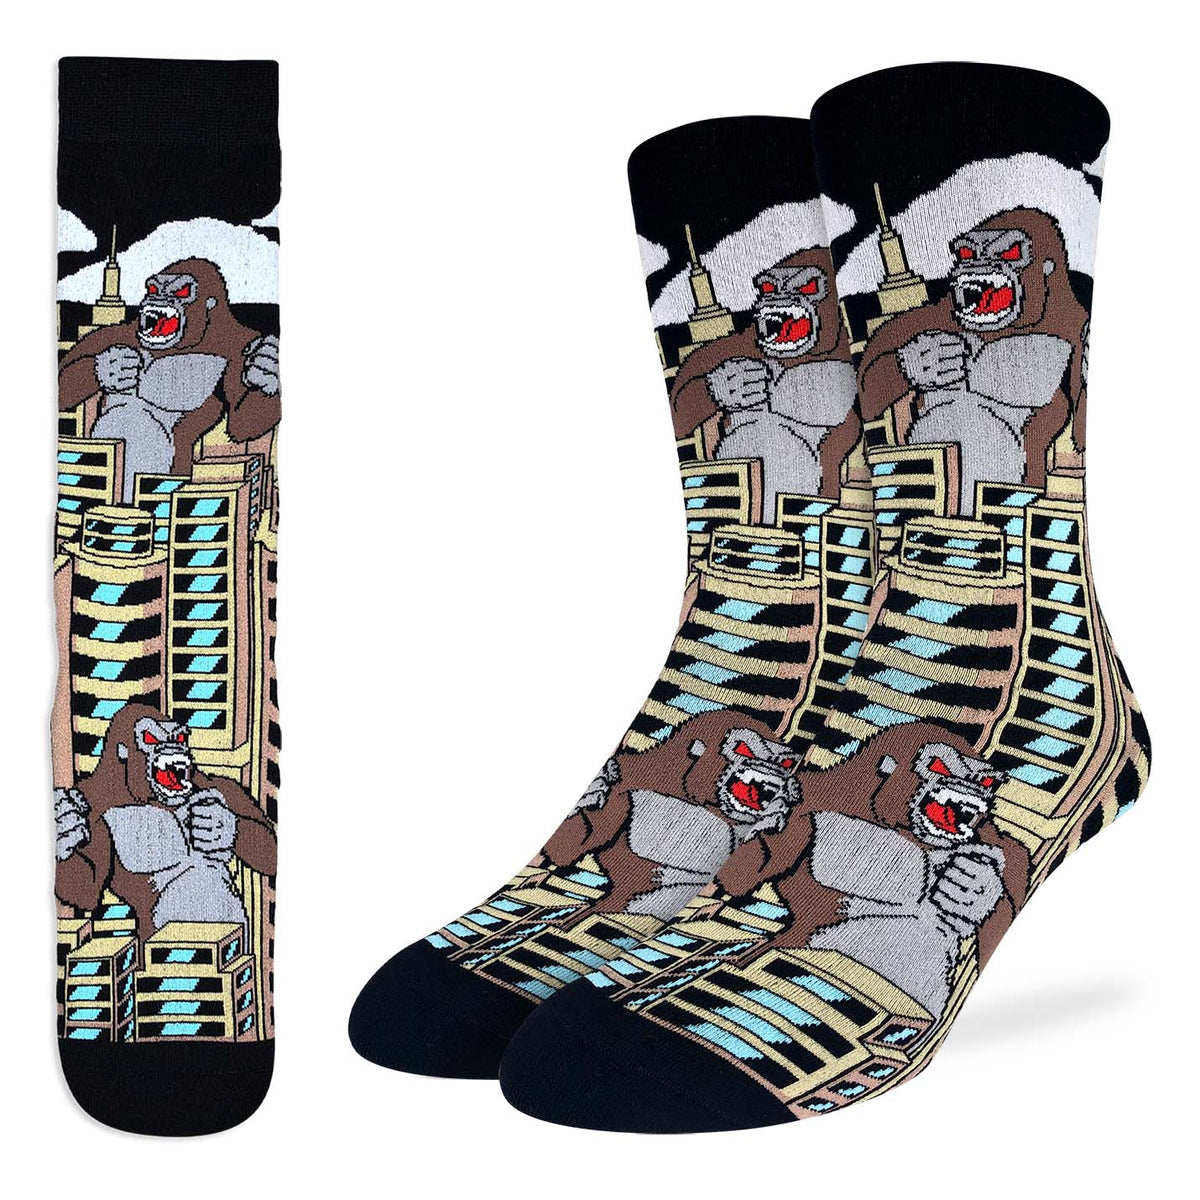 Men's King Kong Socks